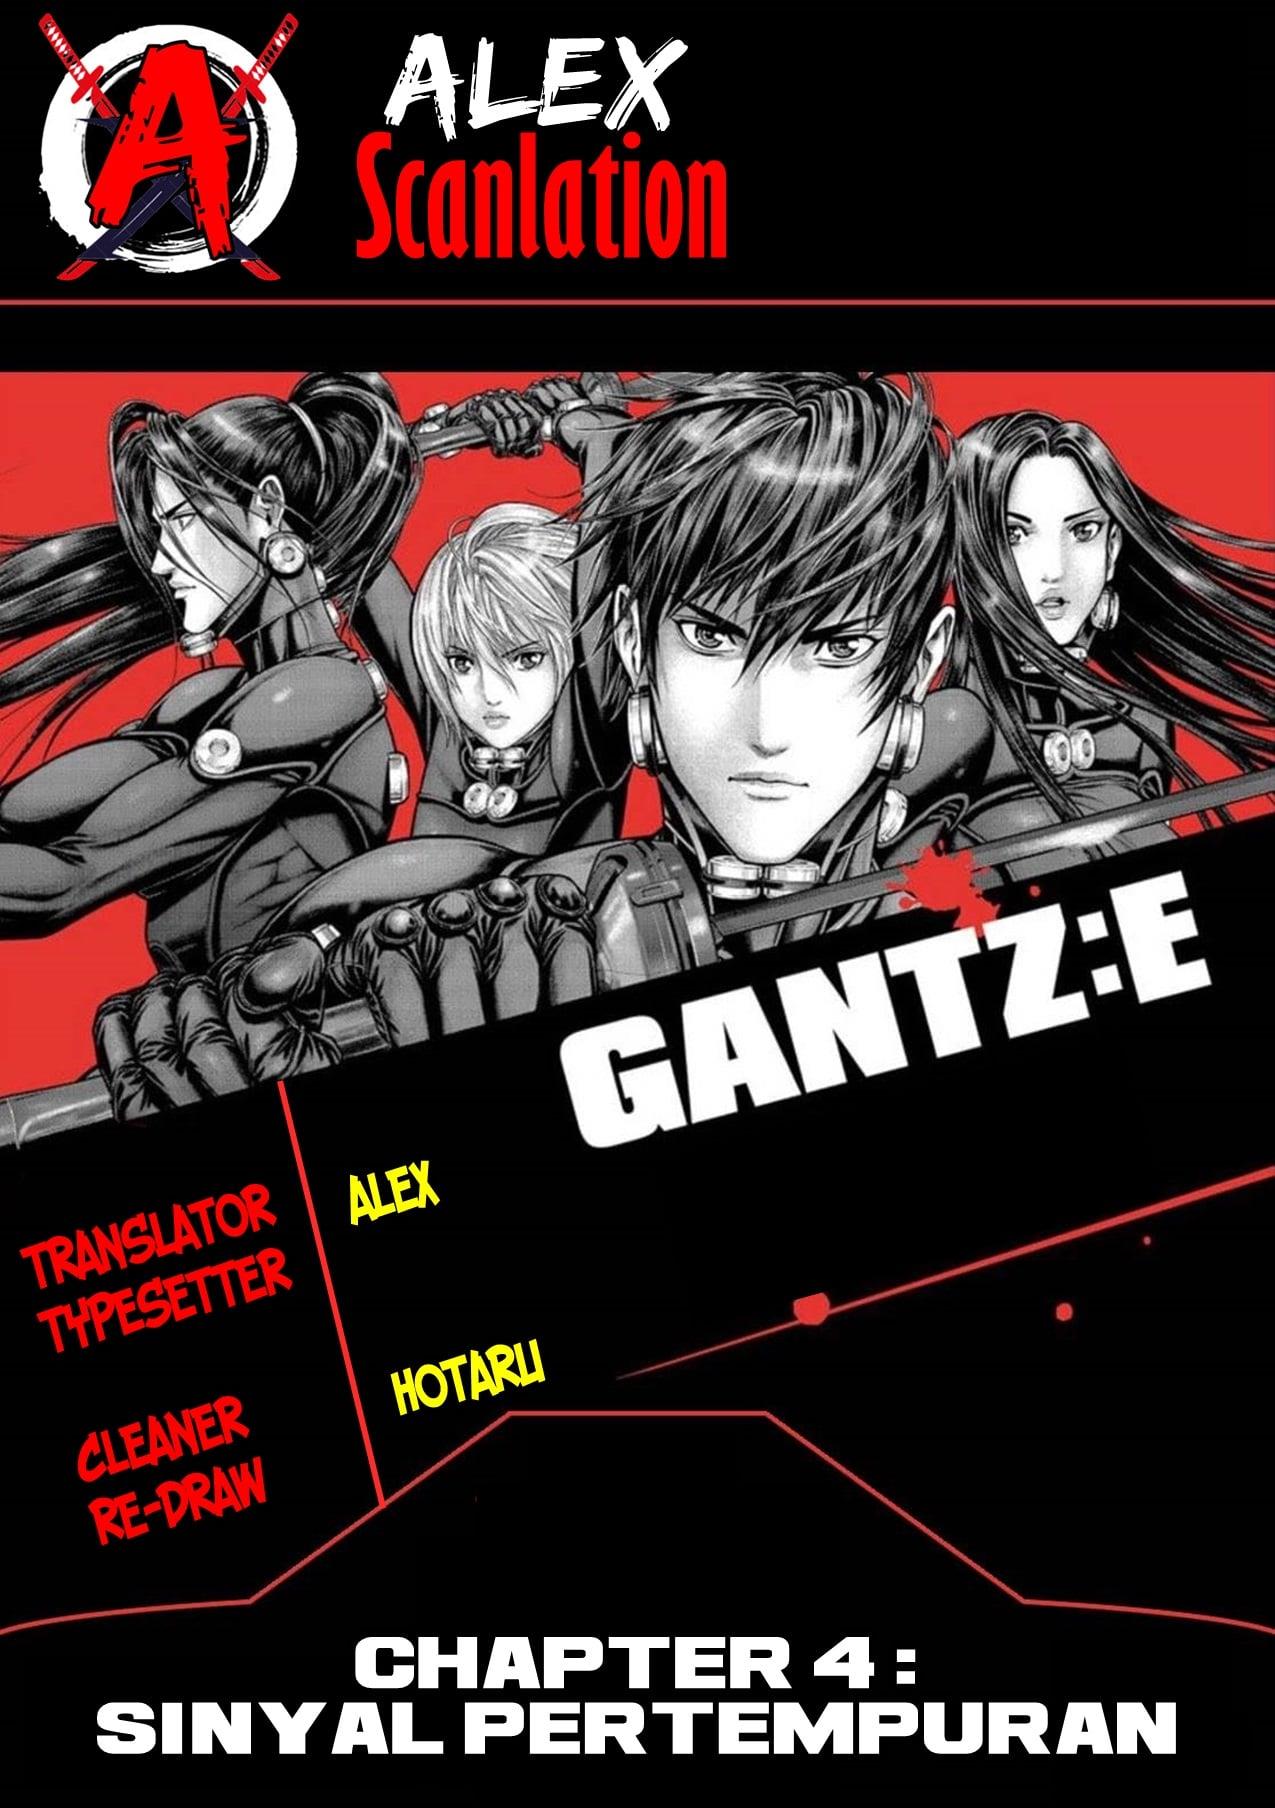 Gantz:E Chapter 4